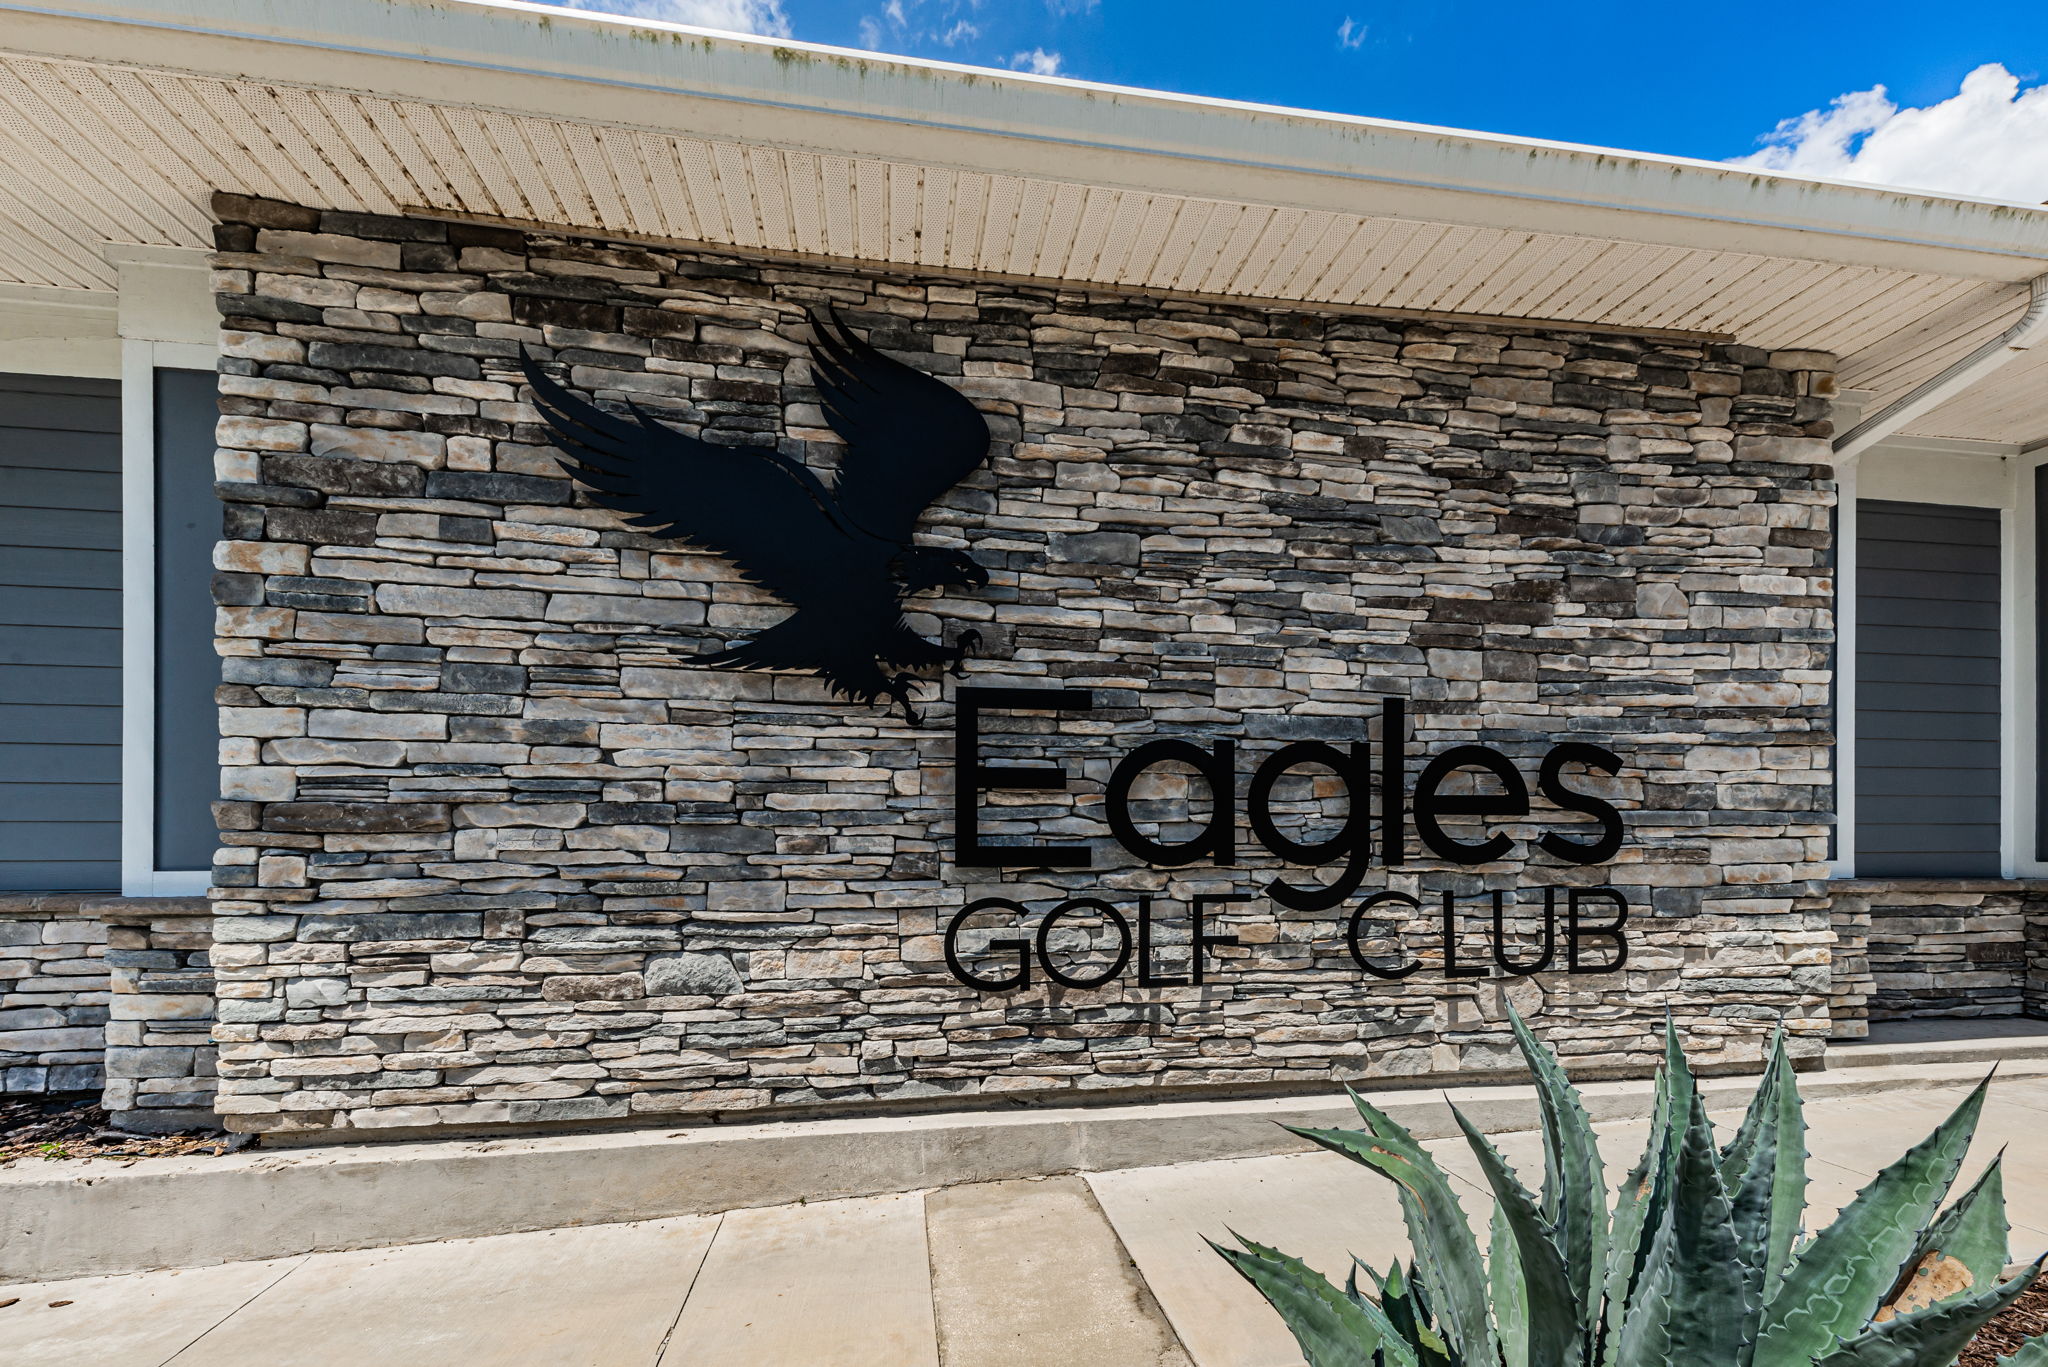 Eagles Golf Club4